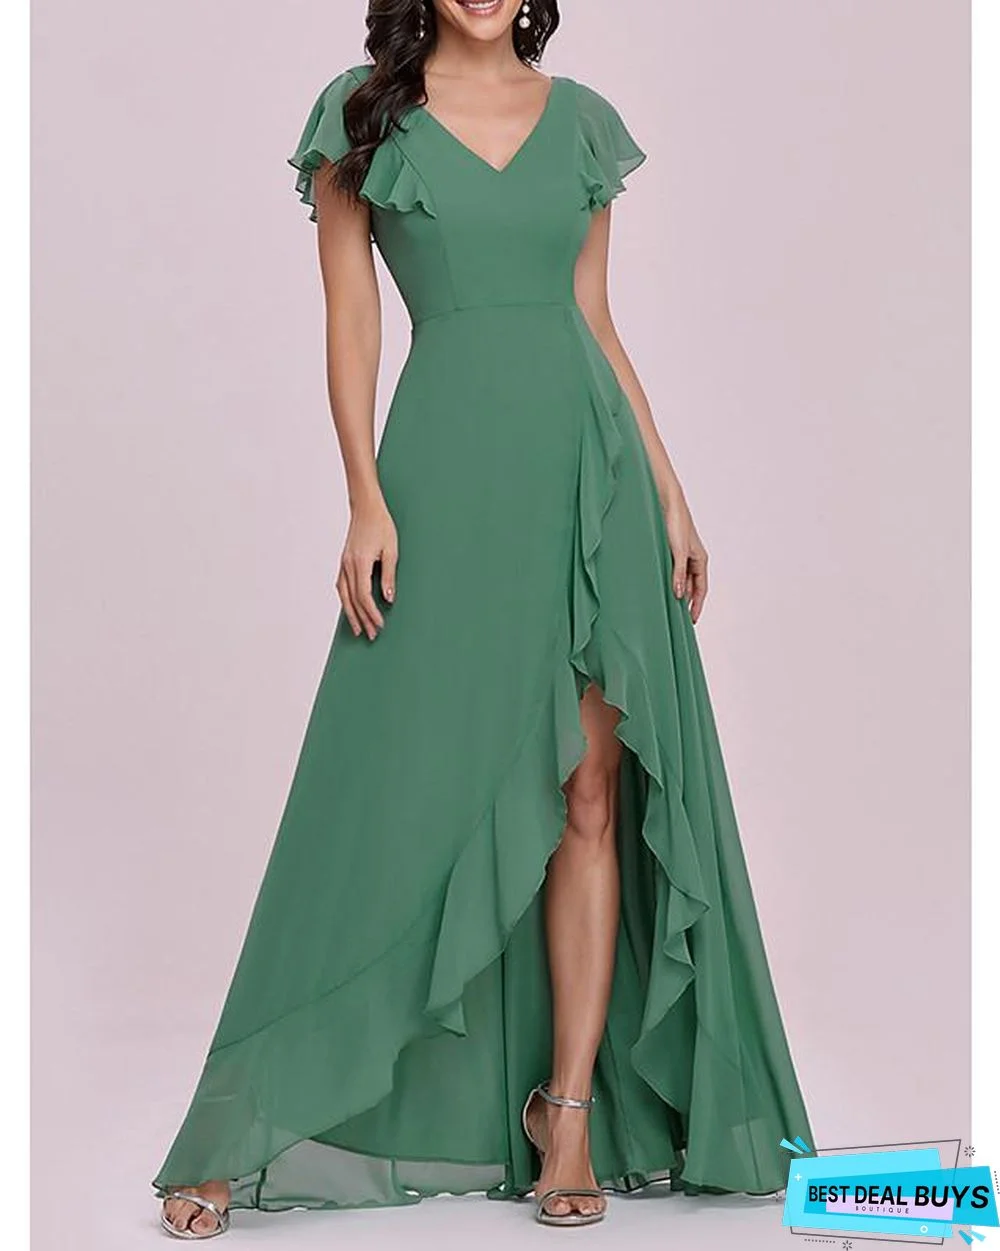 Women's A Line Dress Maxi Long Dress Short Sleeve Solid Color Spring Summer Elegant Vintage Green